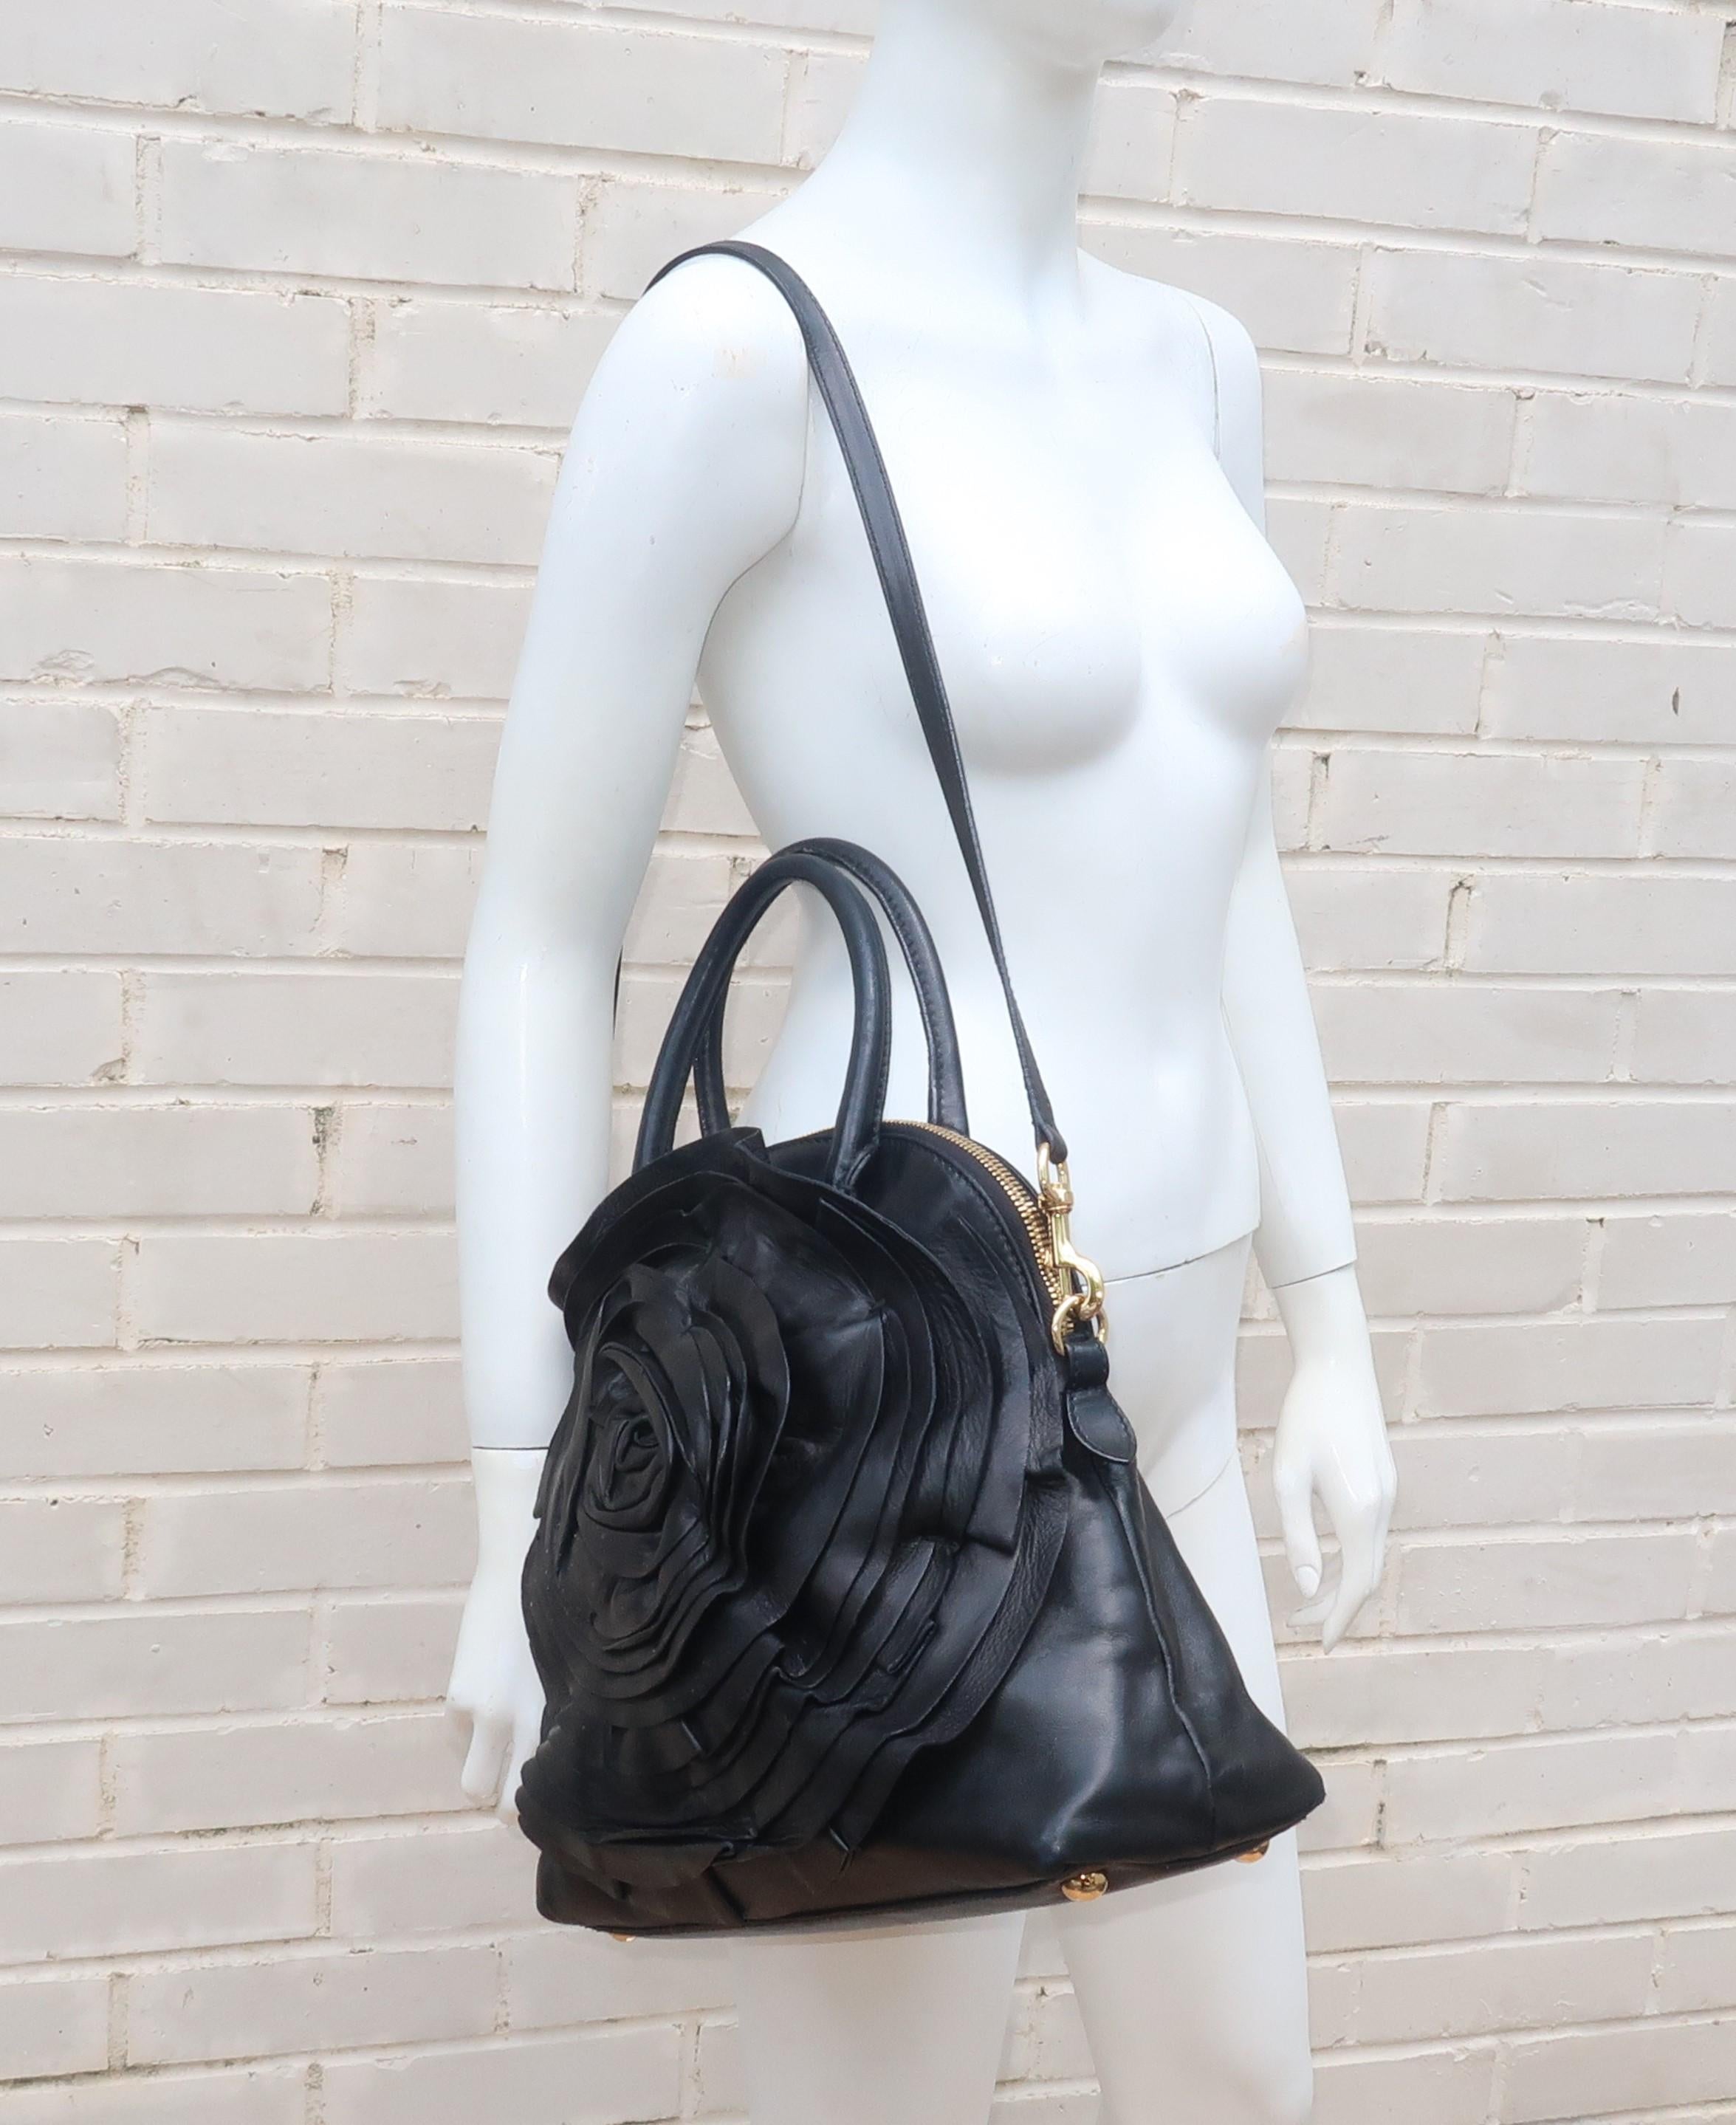 Valentino Garavani Black Leather Petale Dome Handbag 11